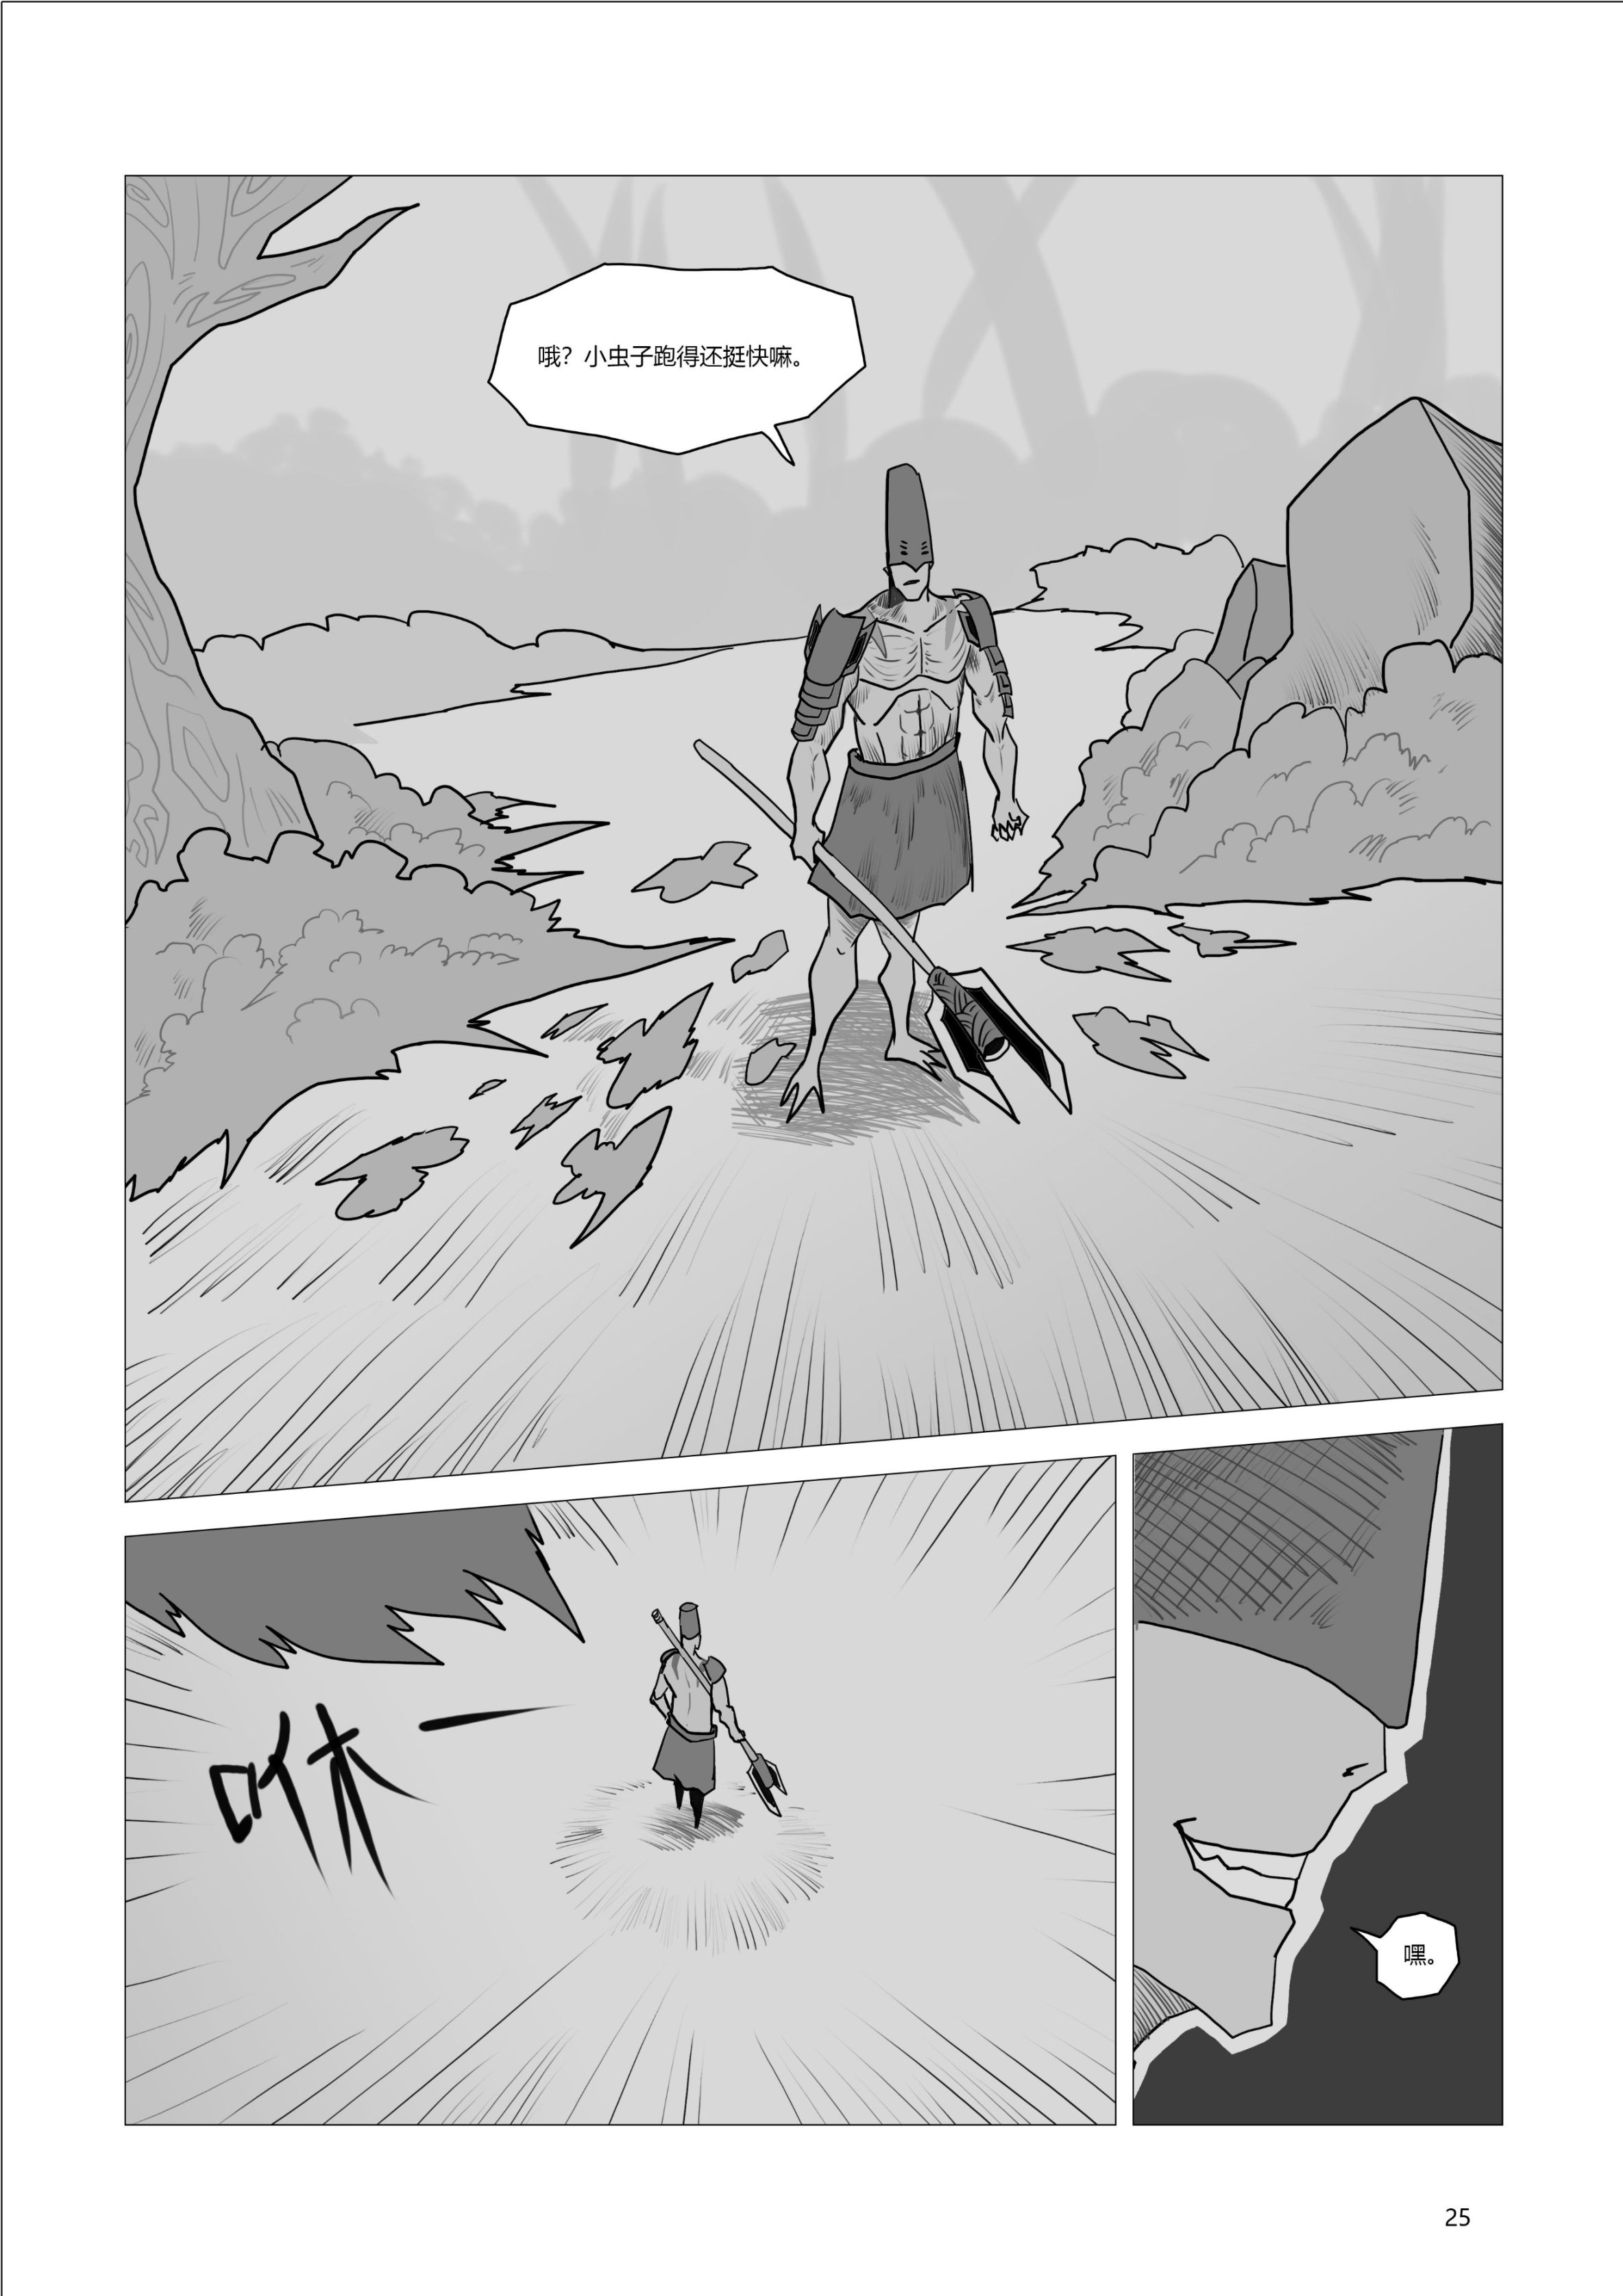 【命运2】原创同人漫画《碎裂炎阳胡克》第四-五话双更-第6张